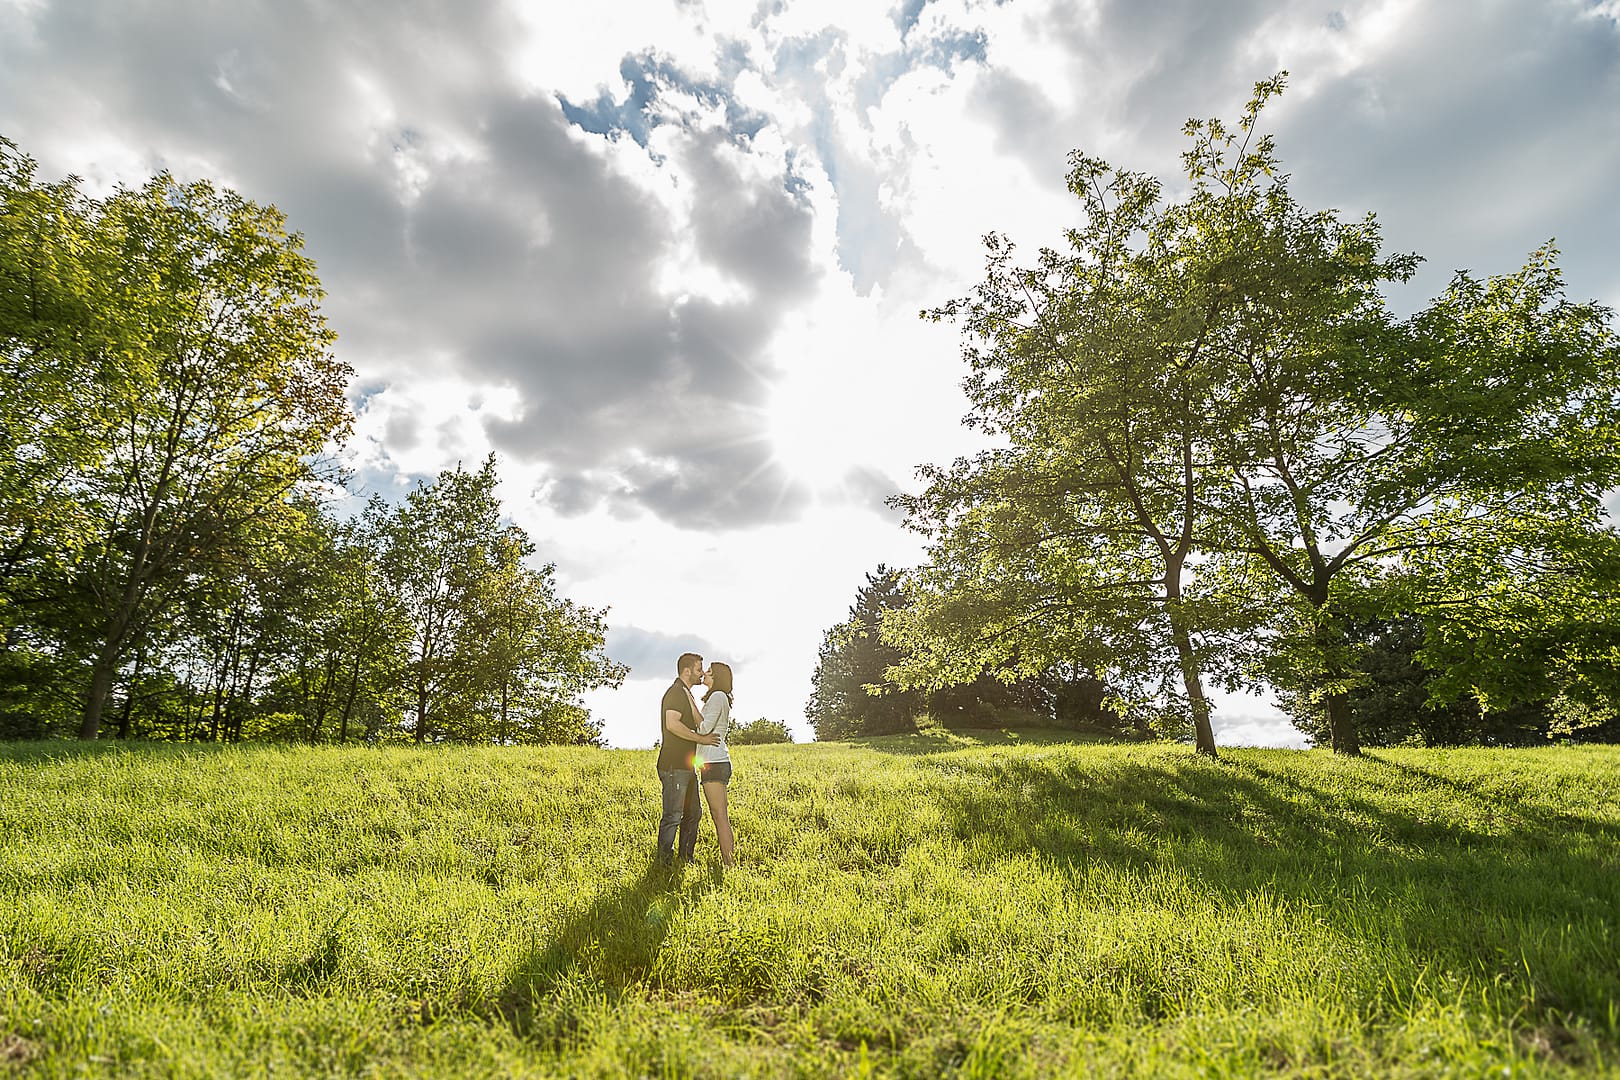 partner-fotoshooting: Ein junges Paar steht in einem hügligen Feld und küsst sich. Beidseitig sind Bäume, im Himmel sehr bewölkt und die Sonne scheint durch die Wolken hindurch.